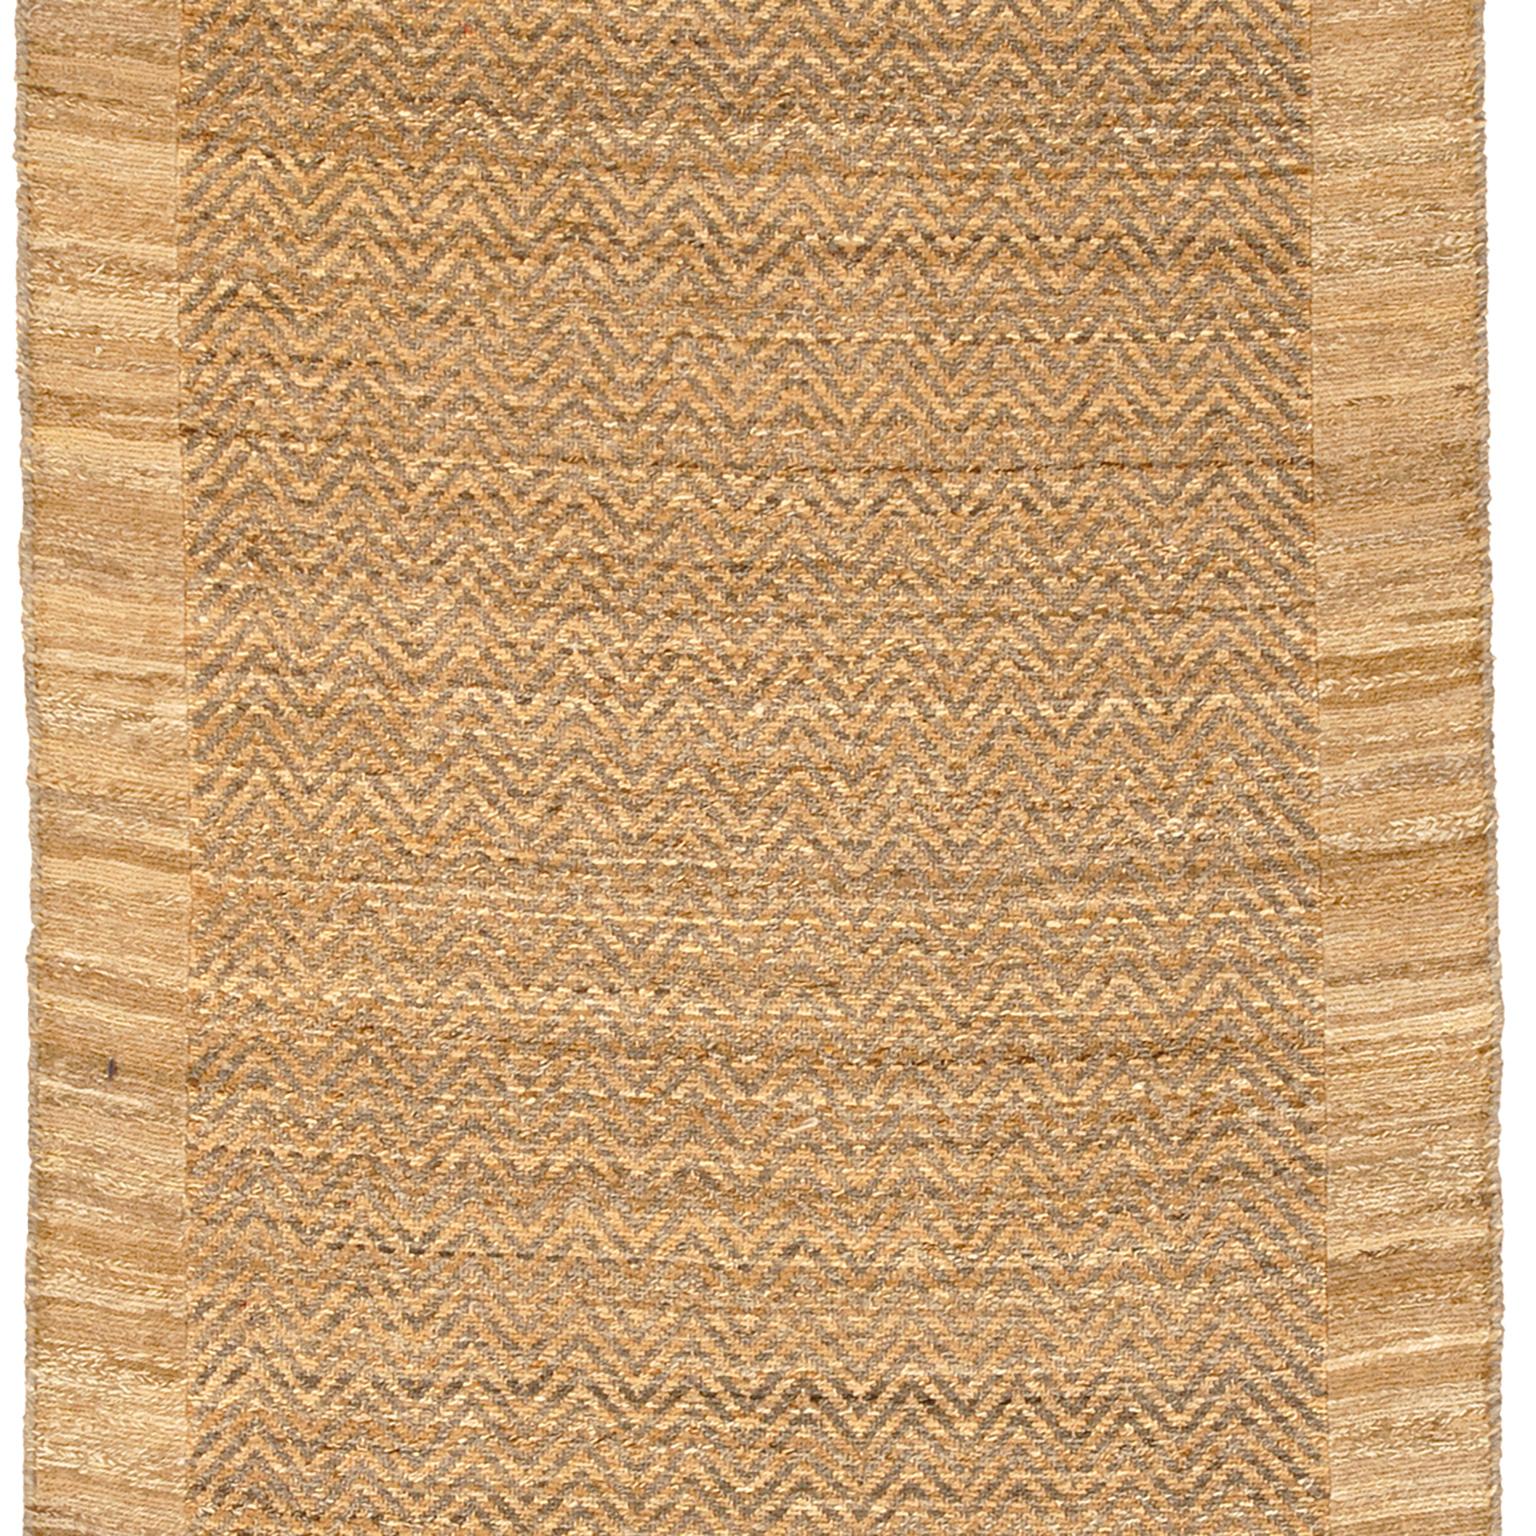 Hand-Woven Contemporary Persian Soumak Carpet